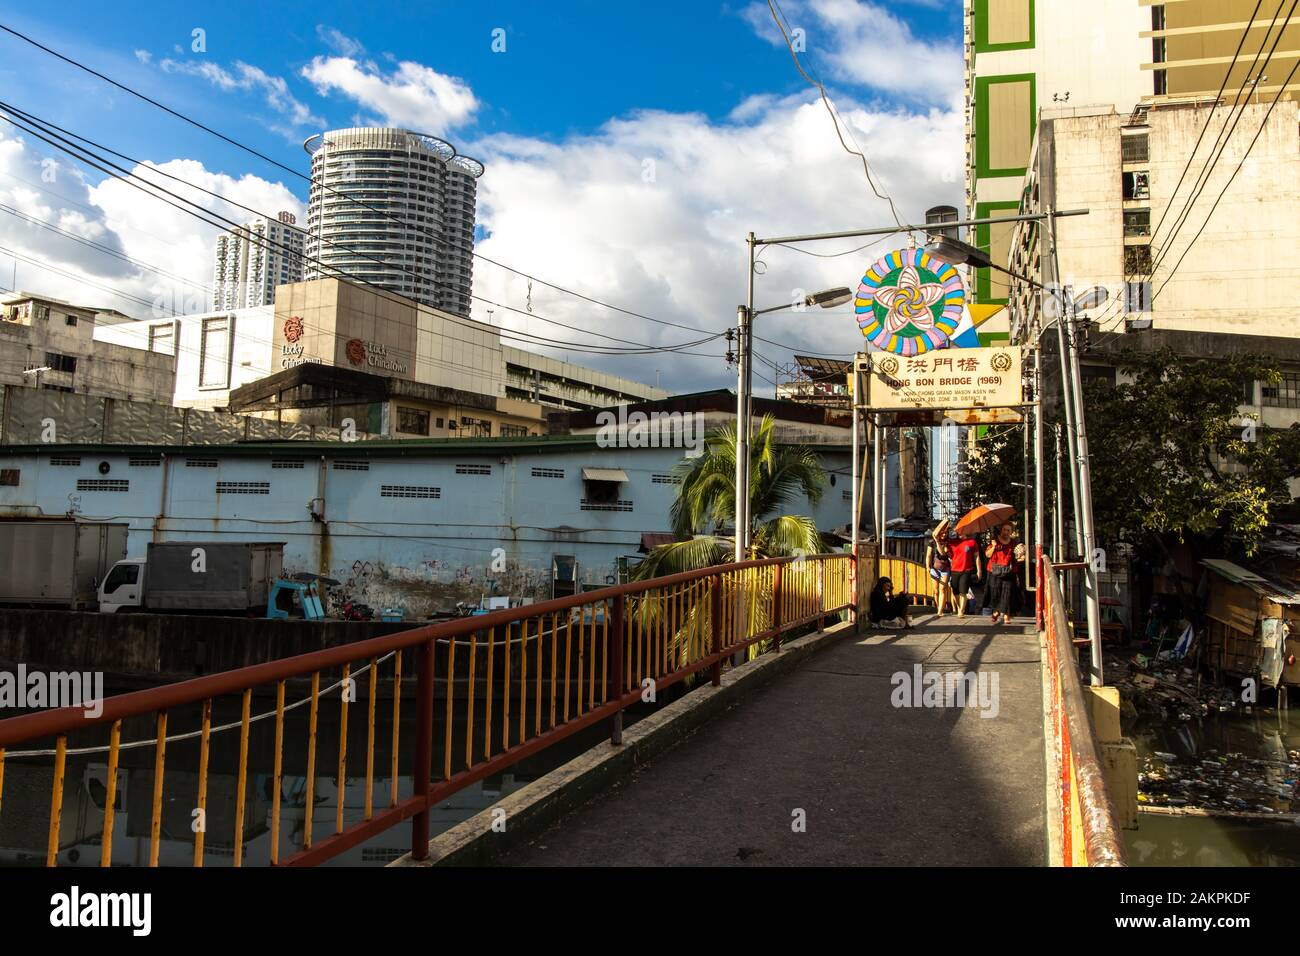 Dec 31, 2019 Binondo Chinatown Street Scene, Manila, Philippines Stock Photo